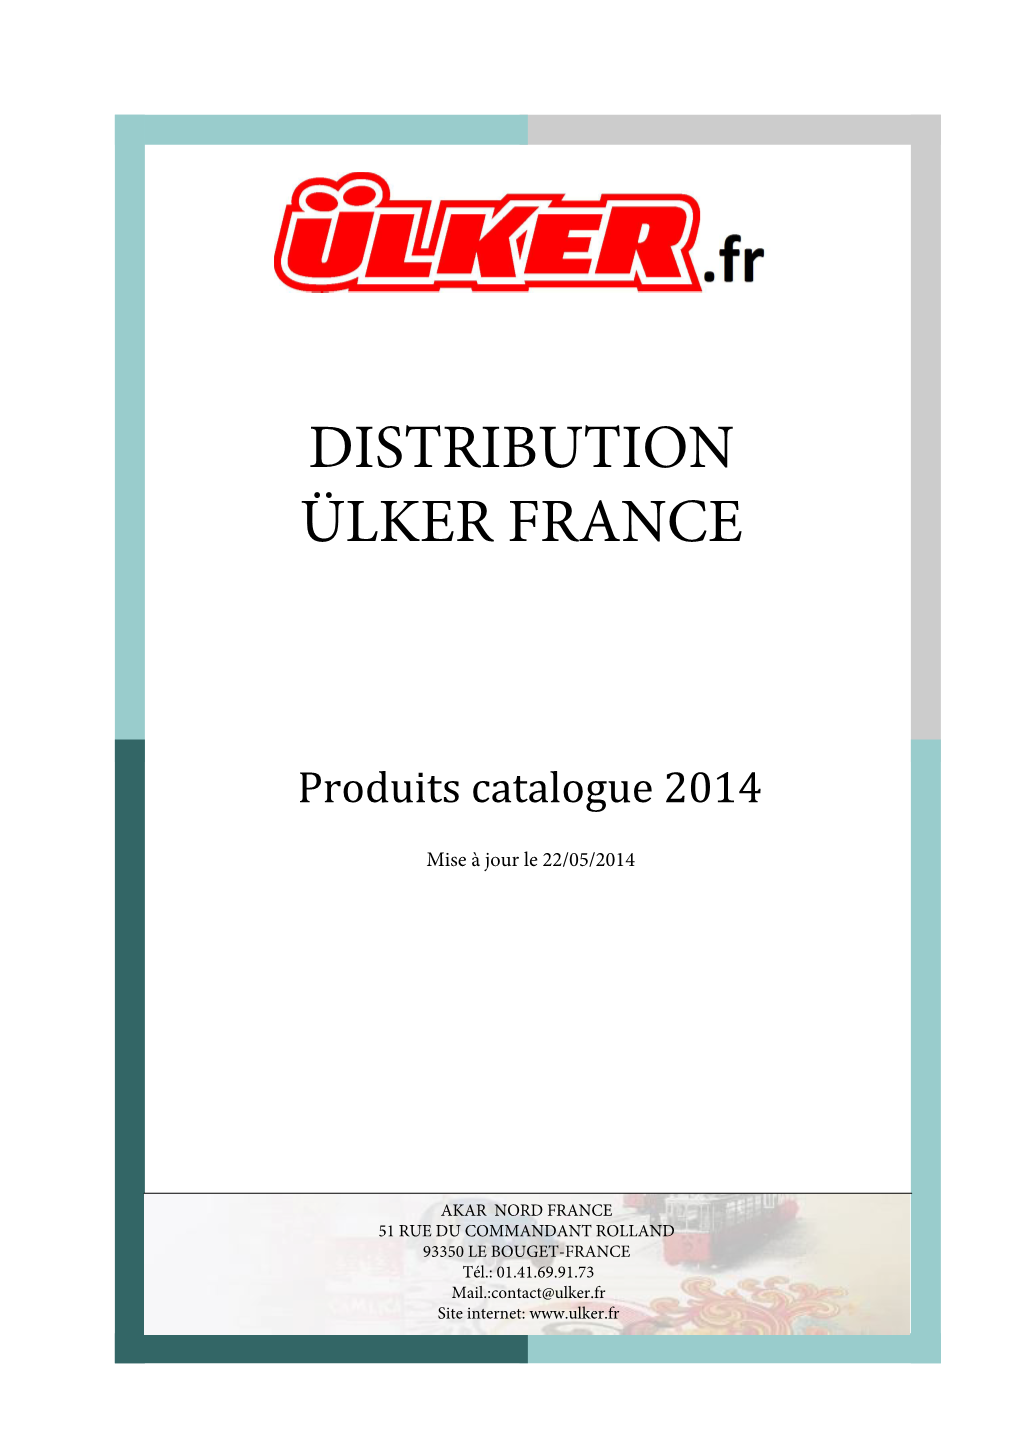 Distribution Ülker France